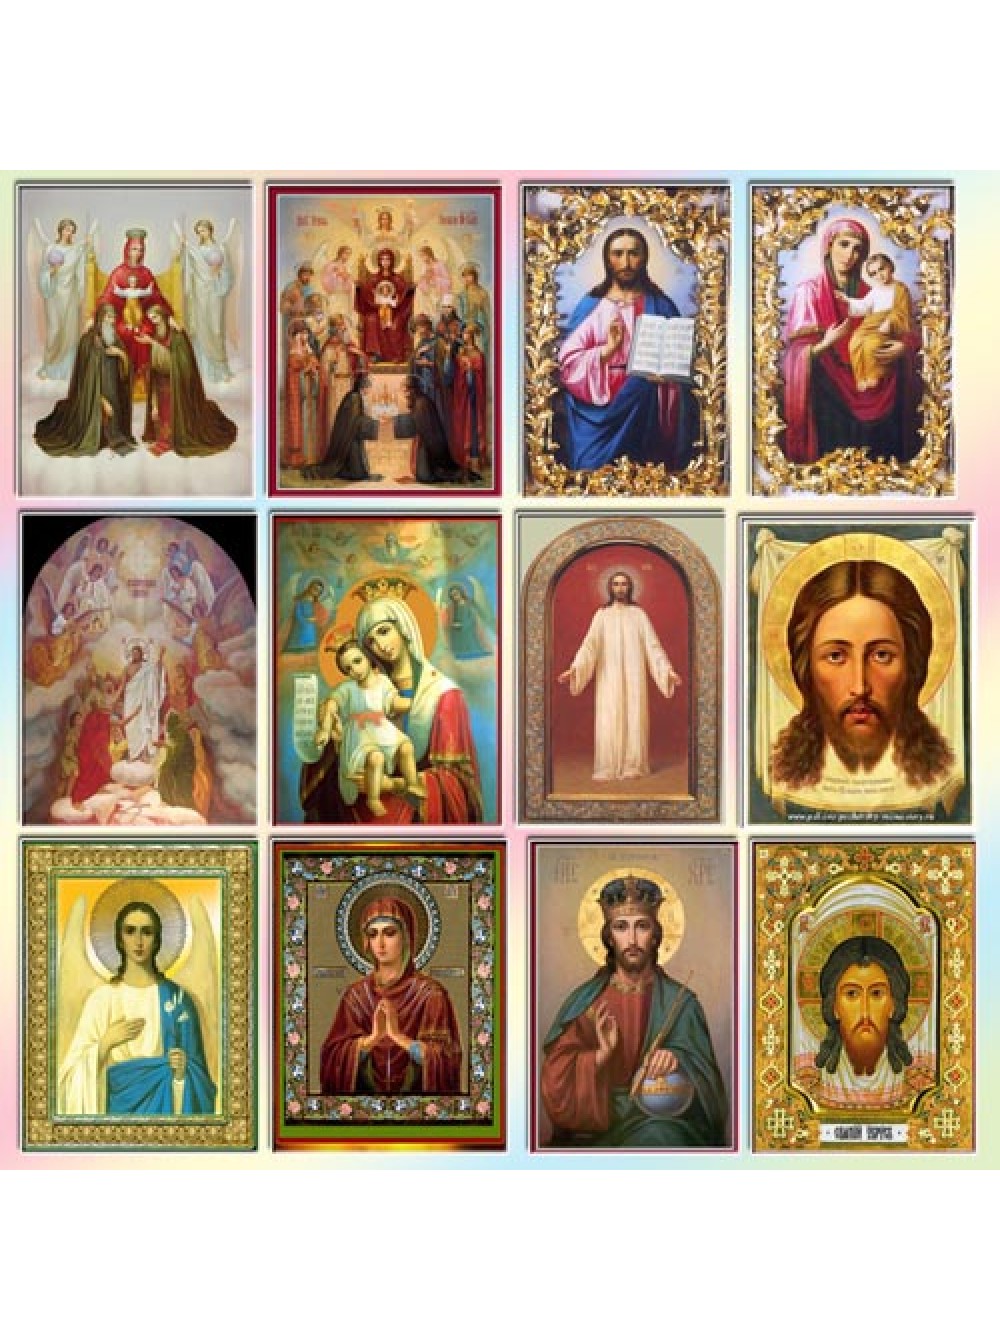 Описание ликов святых. Православные иконы. Иконки православные. Православие иконы. Несколько икон.